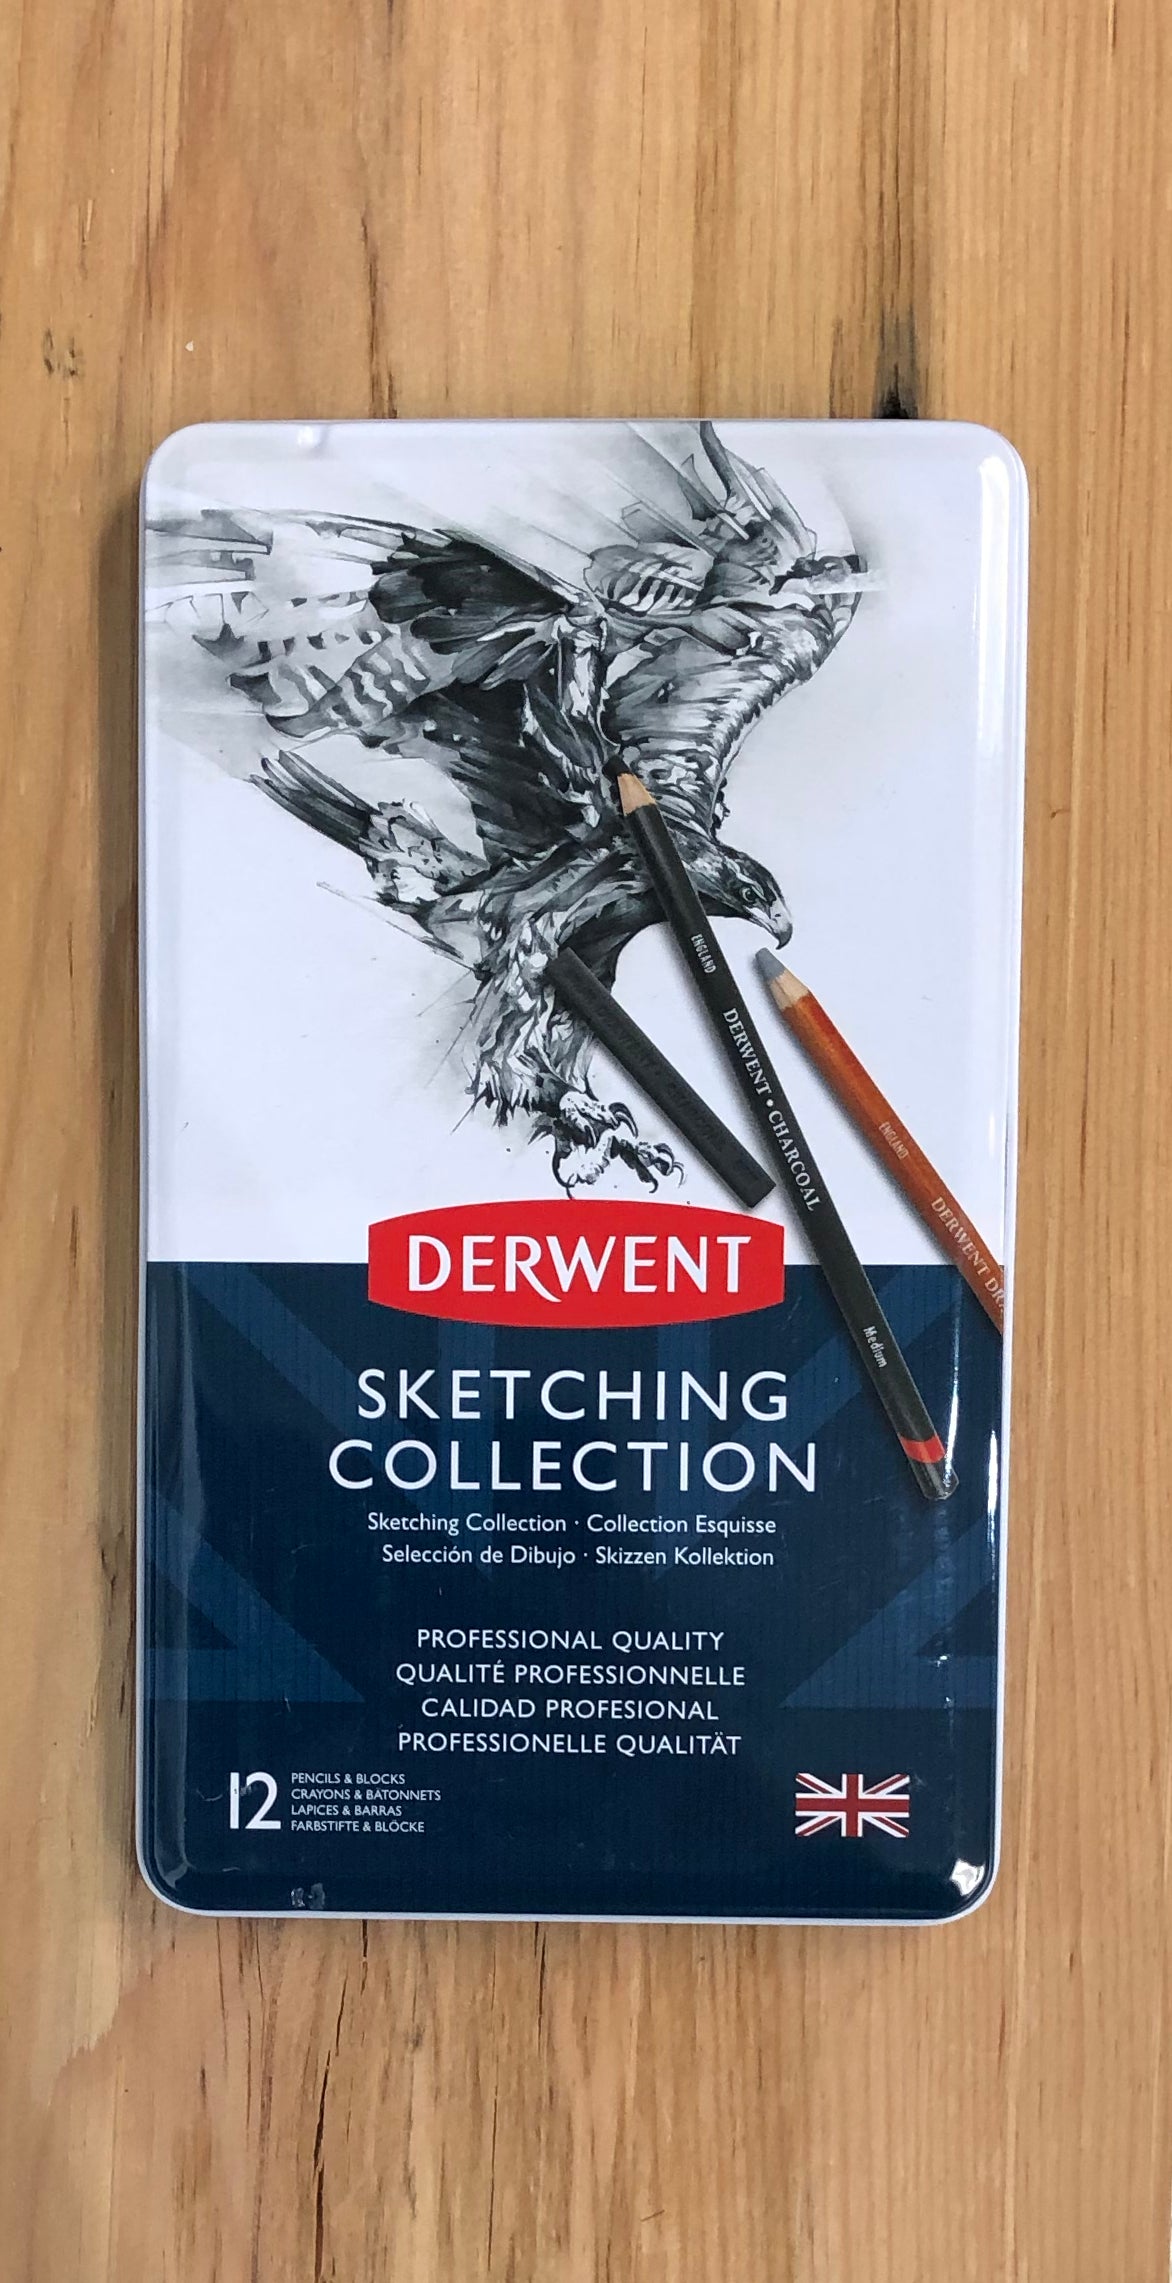 Derwent Sketch Collection, Metal Tin - 12 piece set